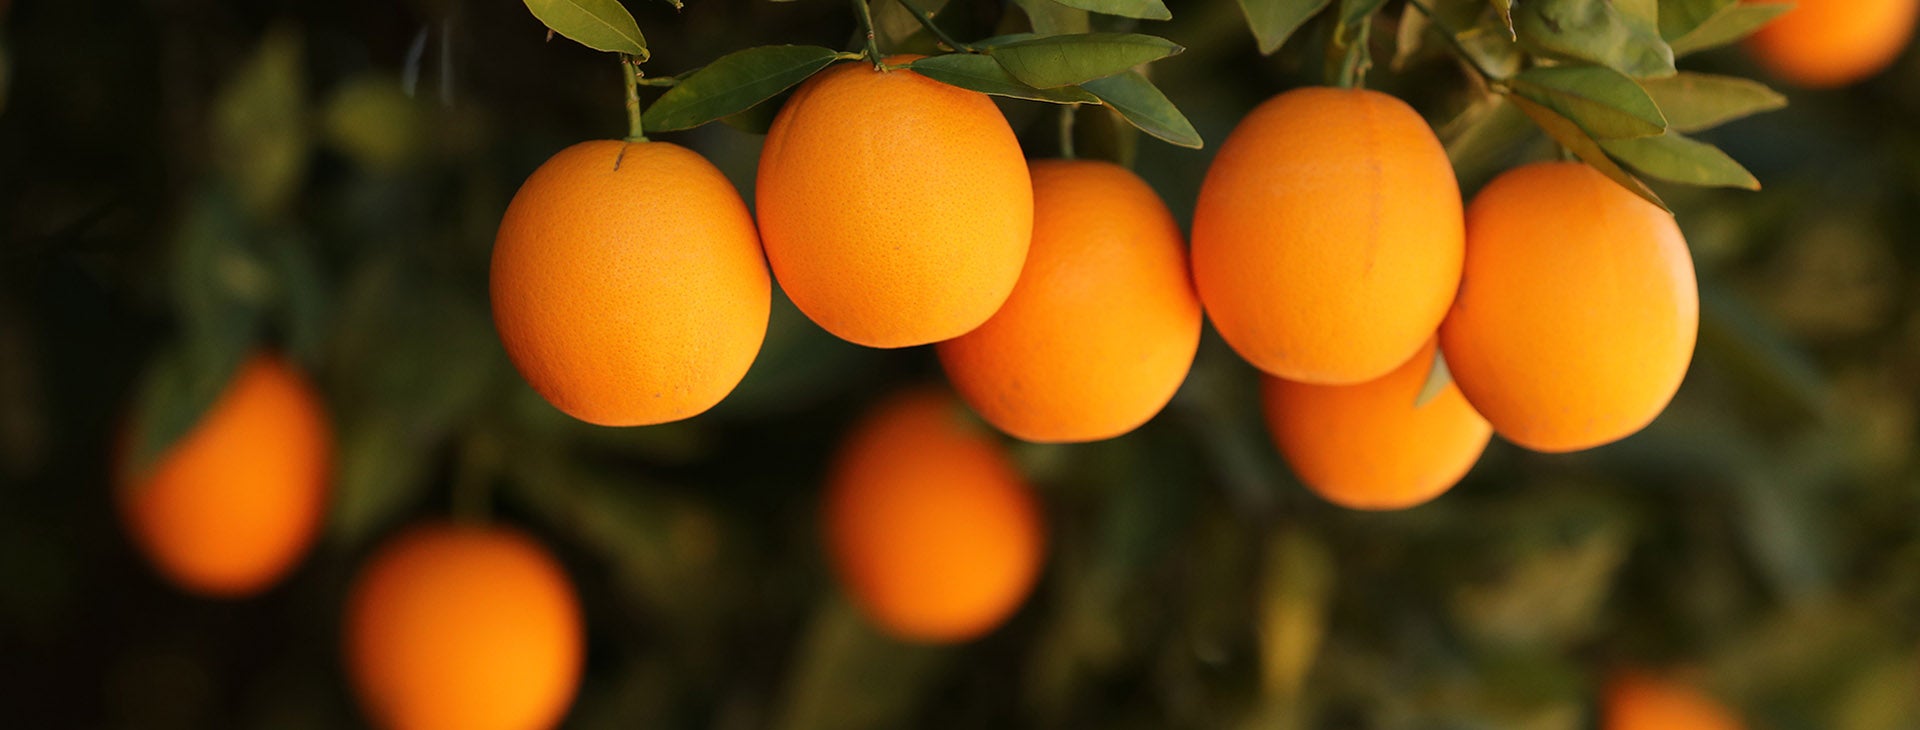 UCR Oranges